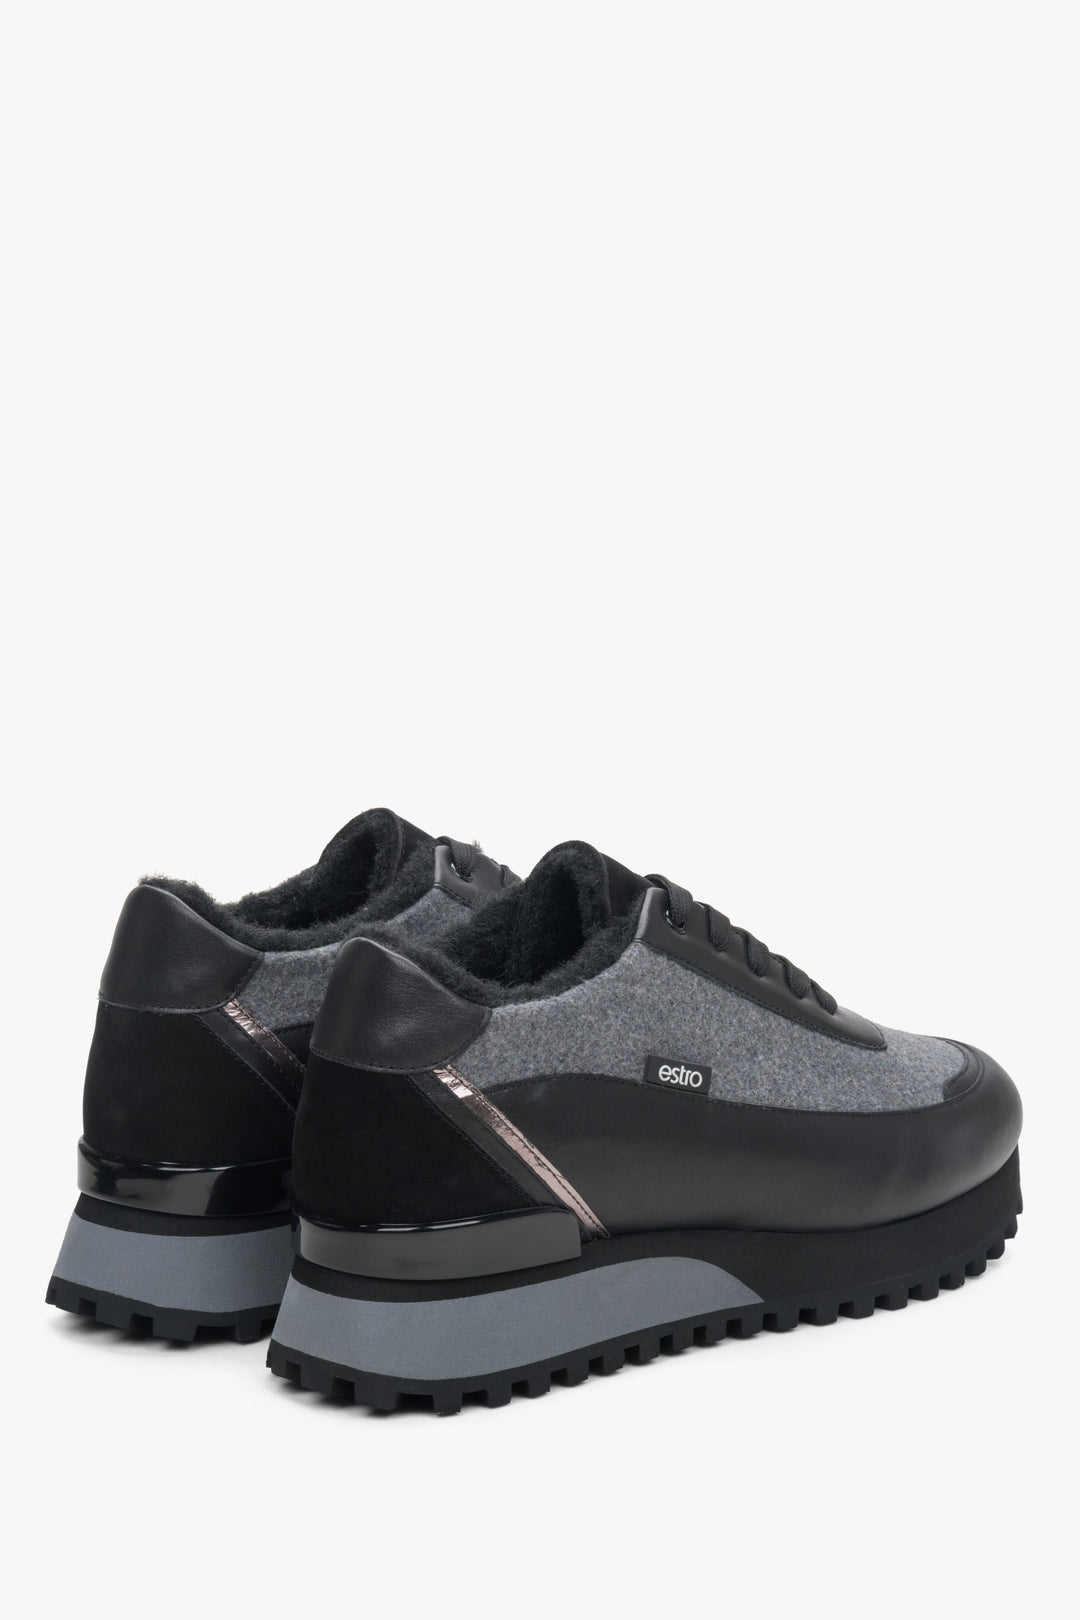 Czarno-szare skórzano-tekstylne zimowe sneakersy damskie Estro - zbliżenie na linię boczną i zapiętek.